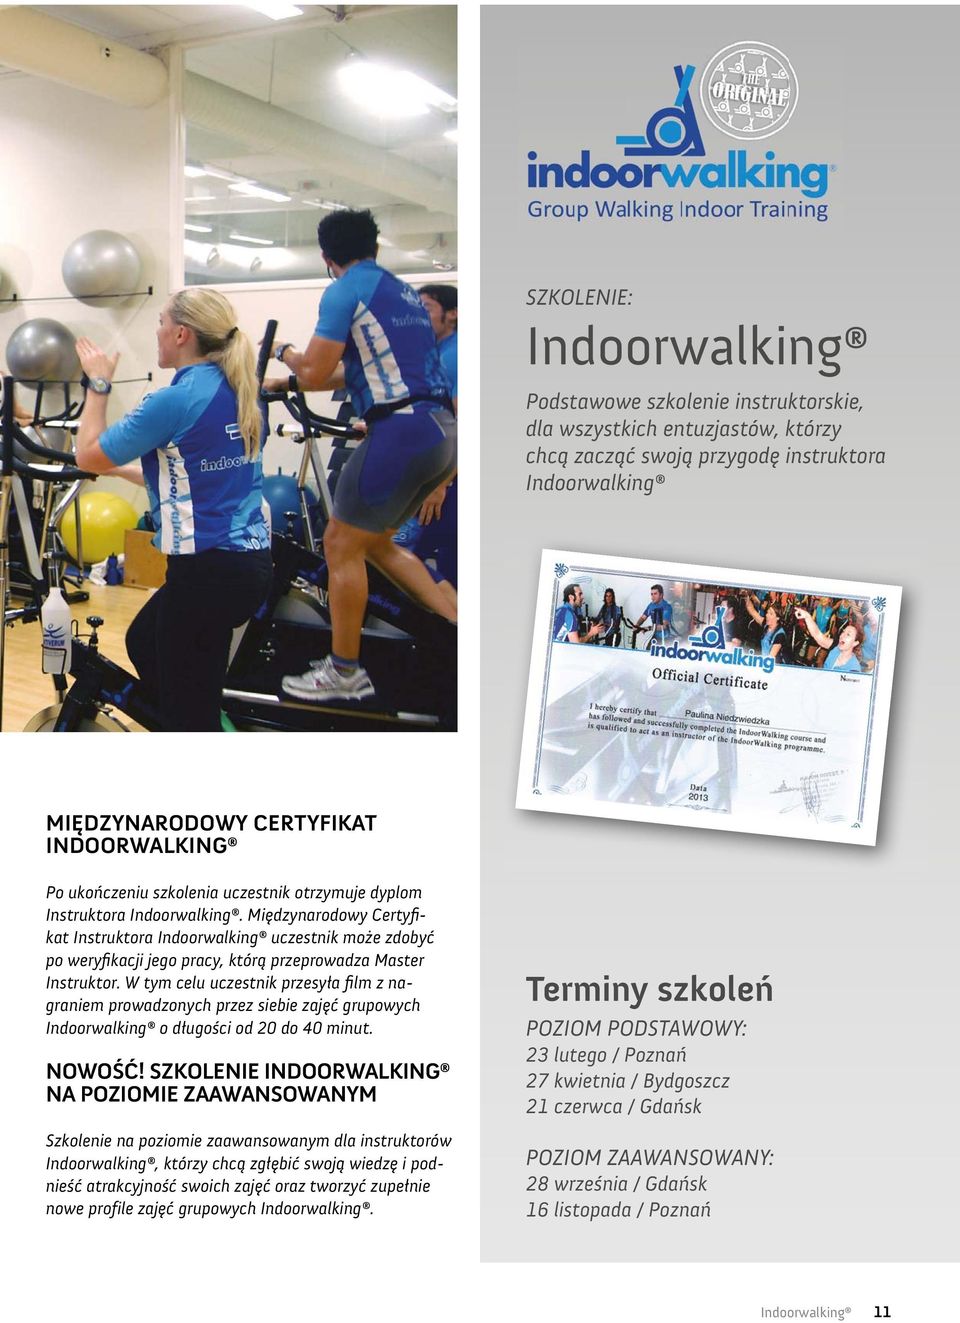 Międzynarodowy Certyfikat Instruktora Indoorwalking uczestnik może zdobyć po weryfikacji jego pracy, którą przeprowadza Master Instruktor.